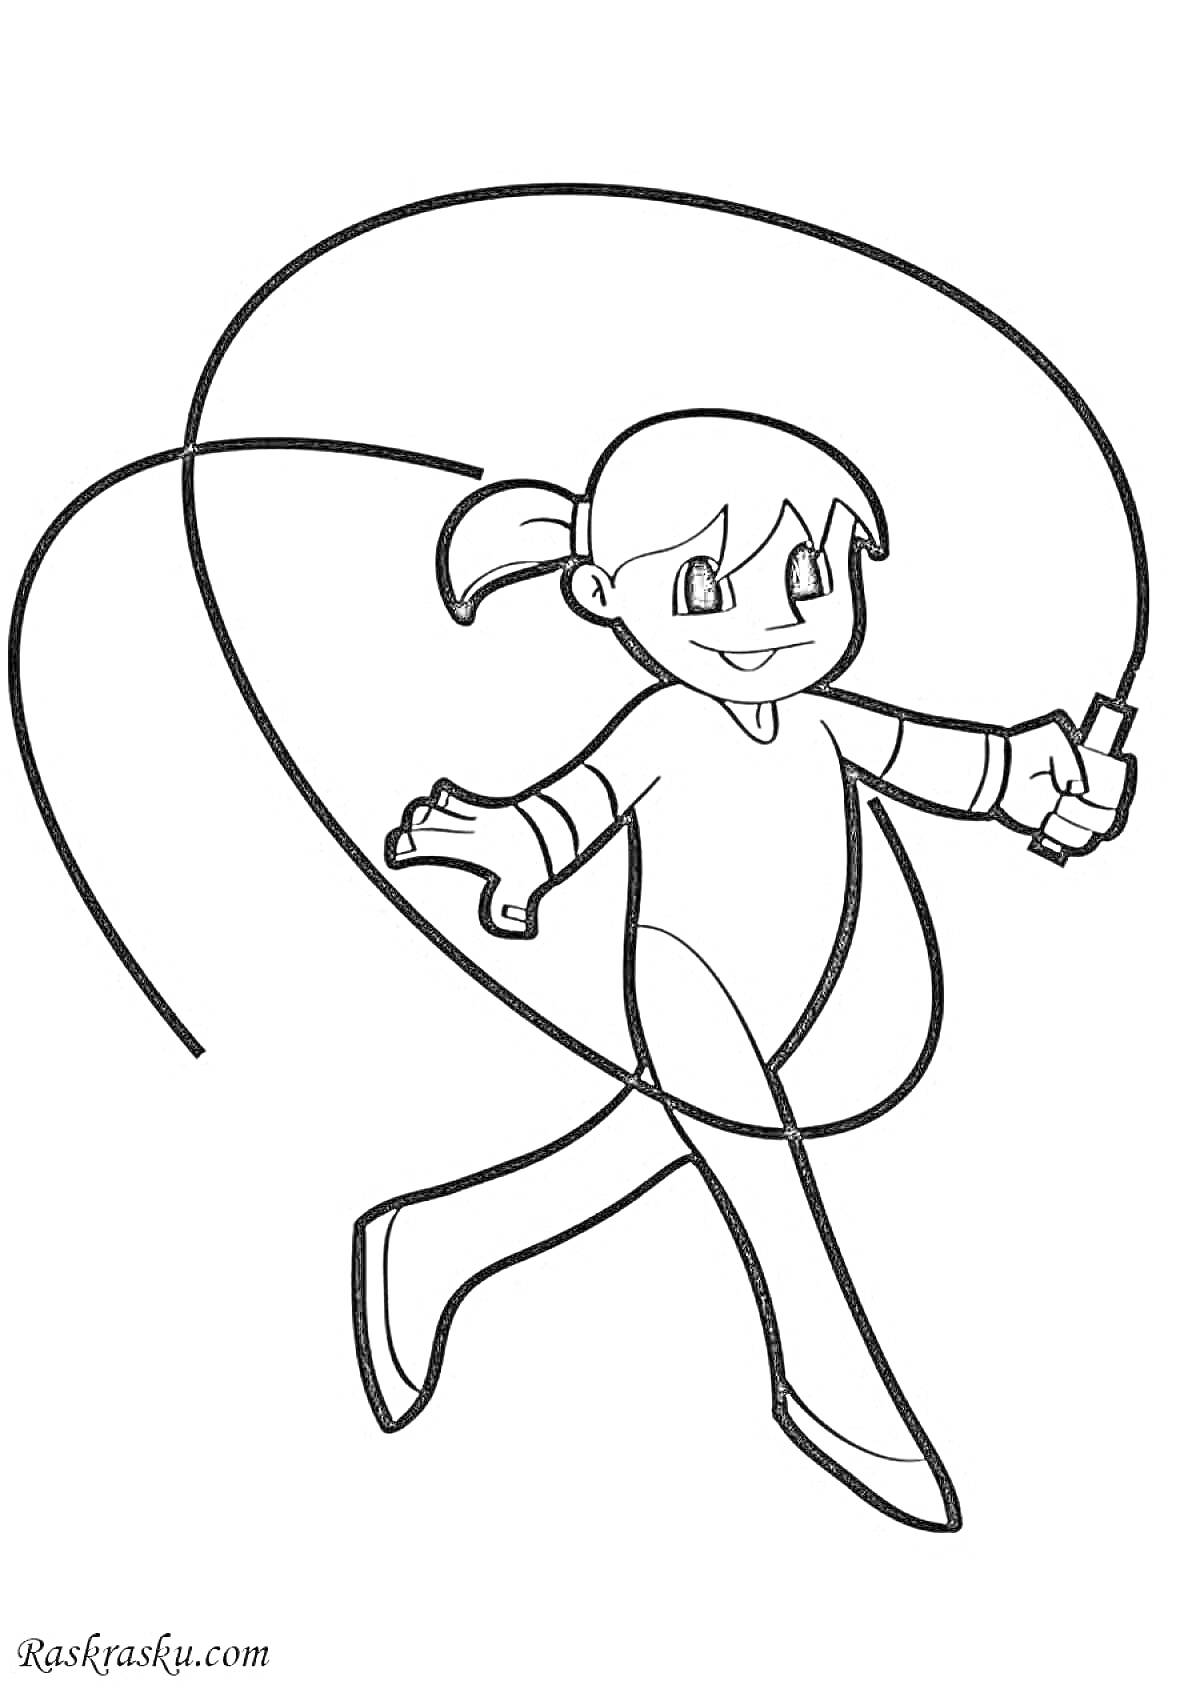 Раскраска Девочка с косичкой, прыгающая через скакалку